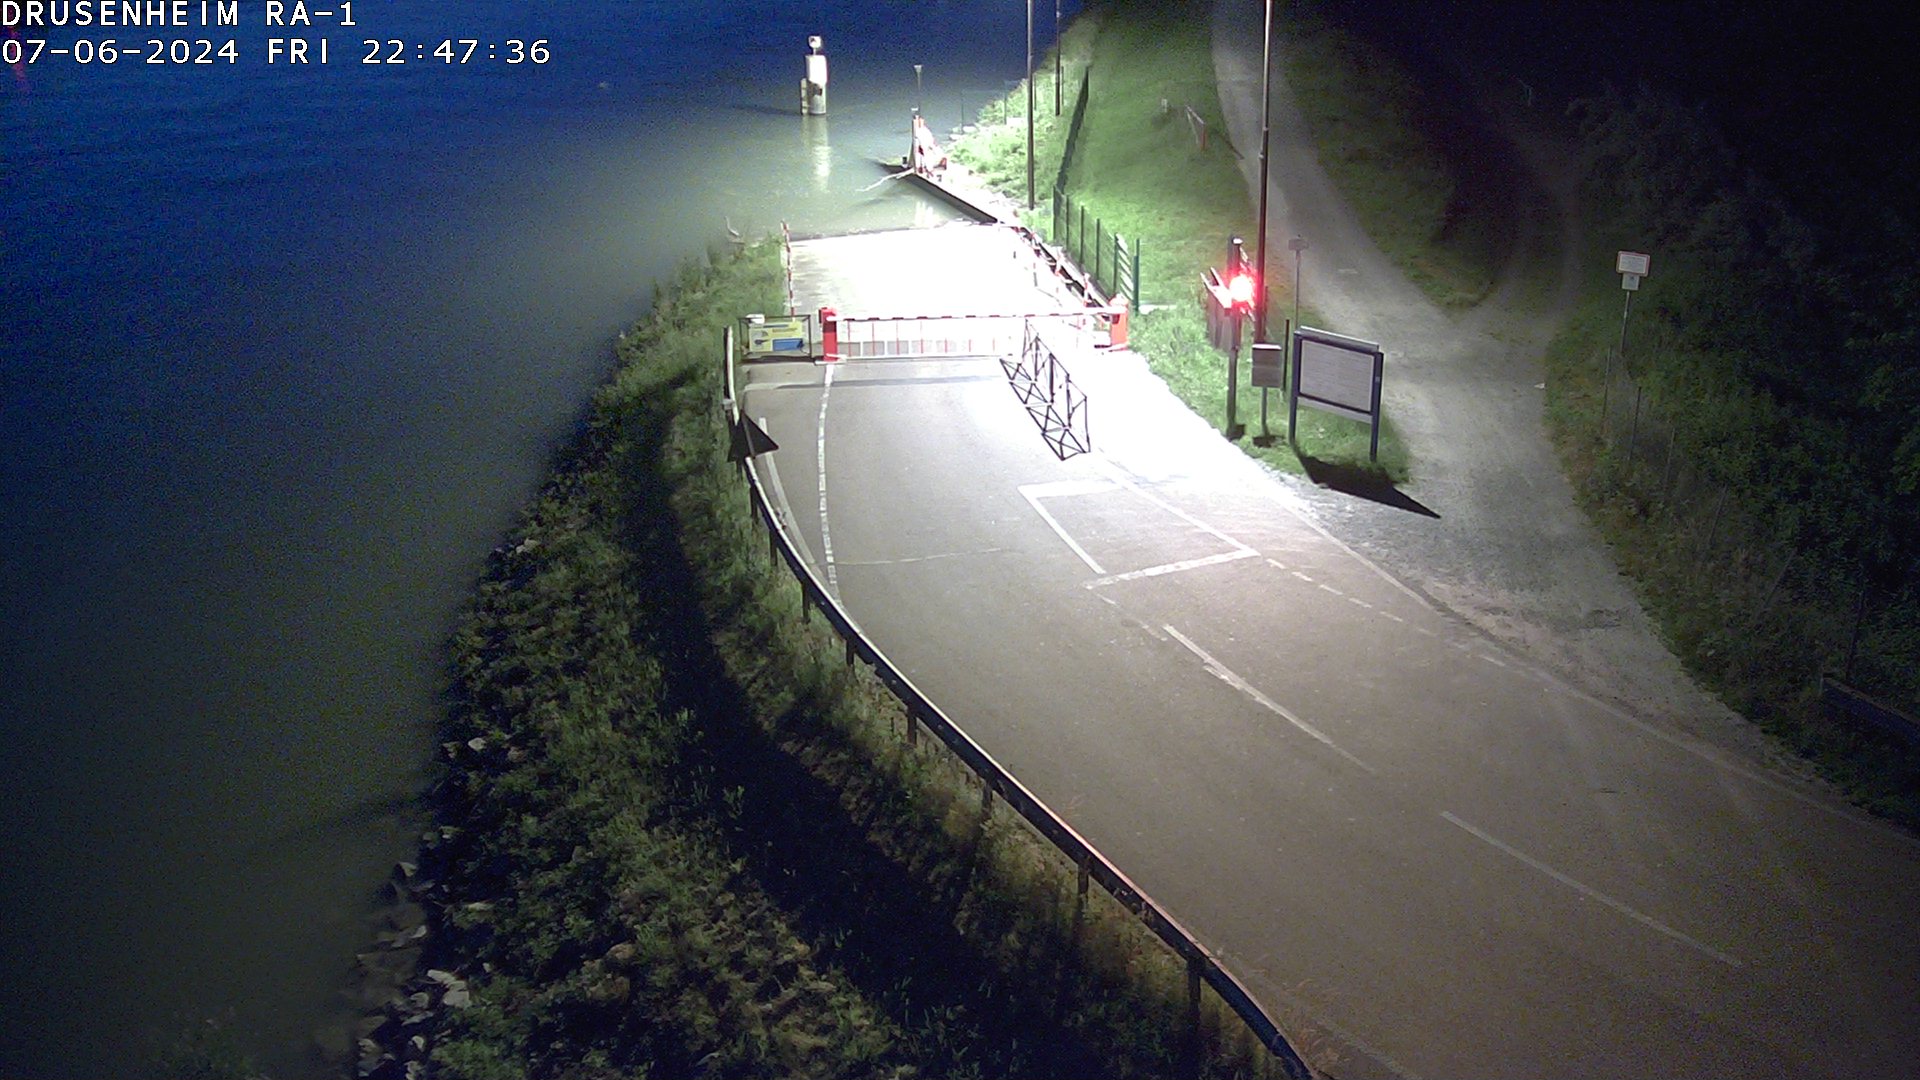 <h2>Webcam donnant sur la rampe d'embarquement du bac de Drusenheim</h2>